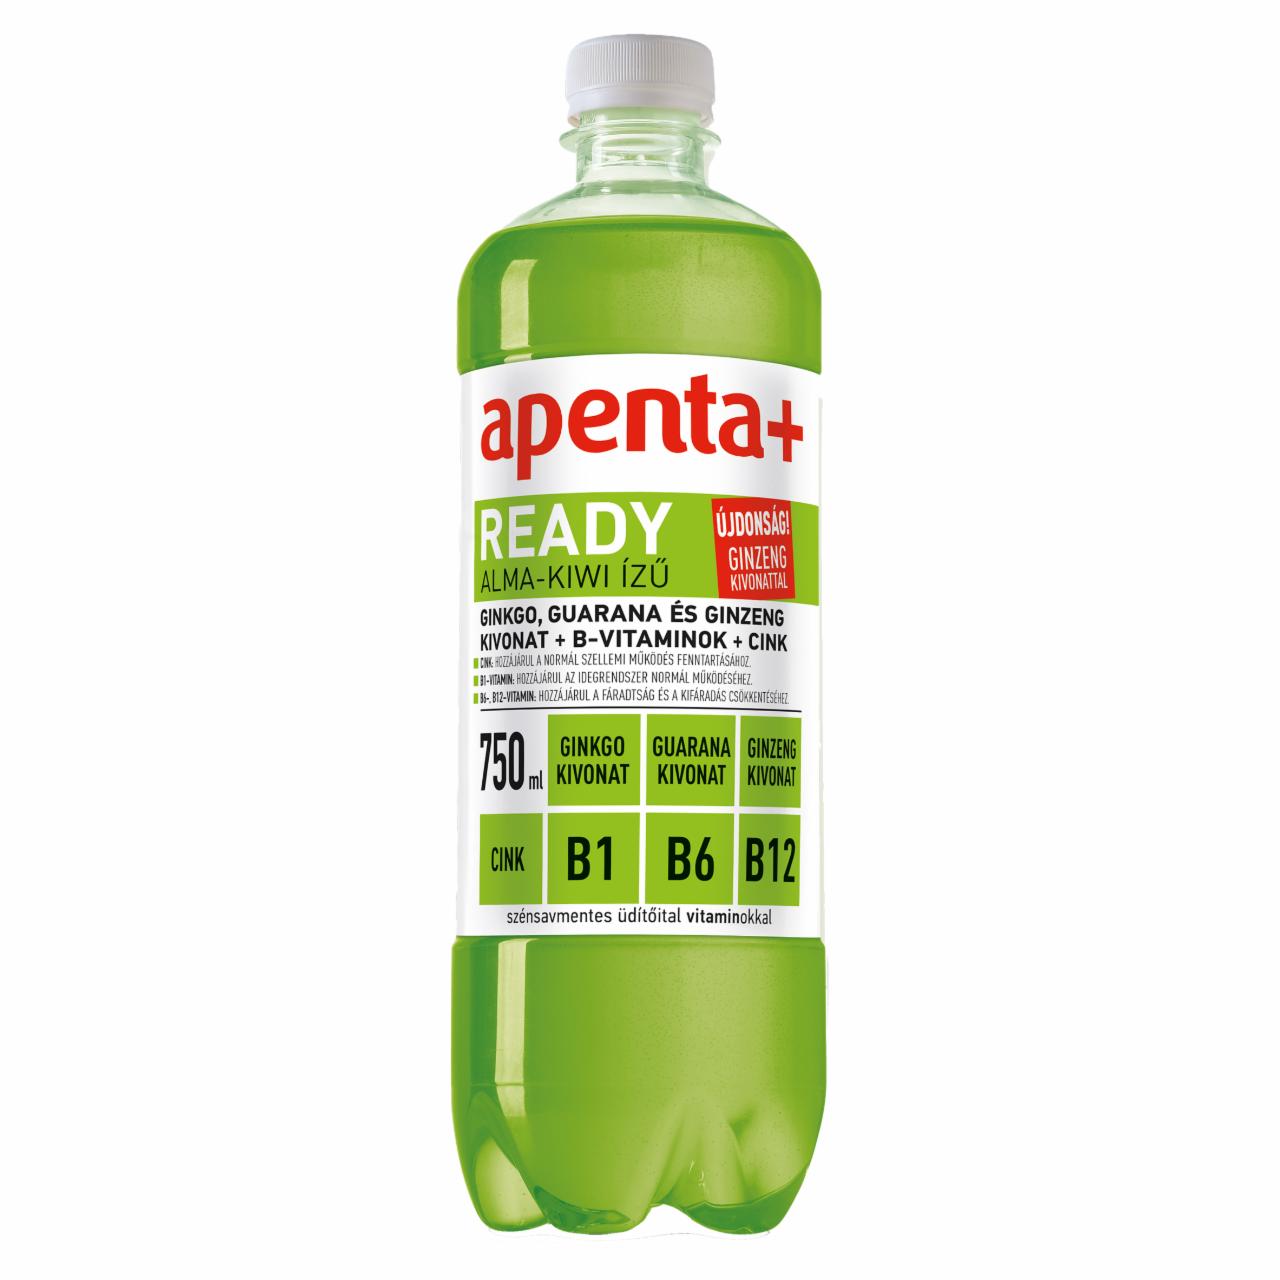 Képek - Apenta+ Ready alma-kiwi ízű szénsavmentes üdítőital